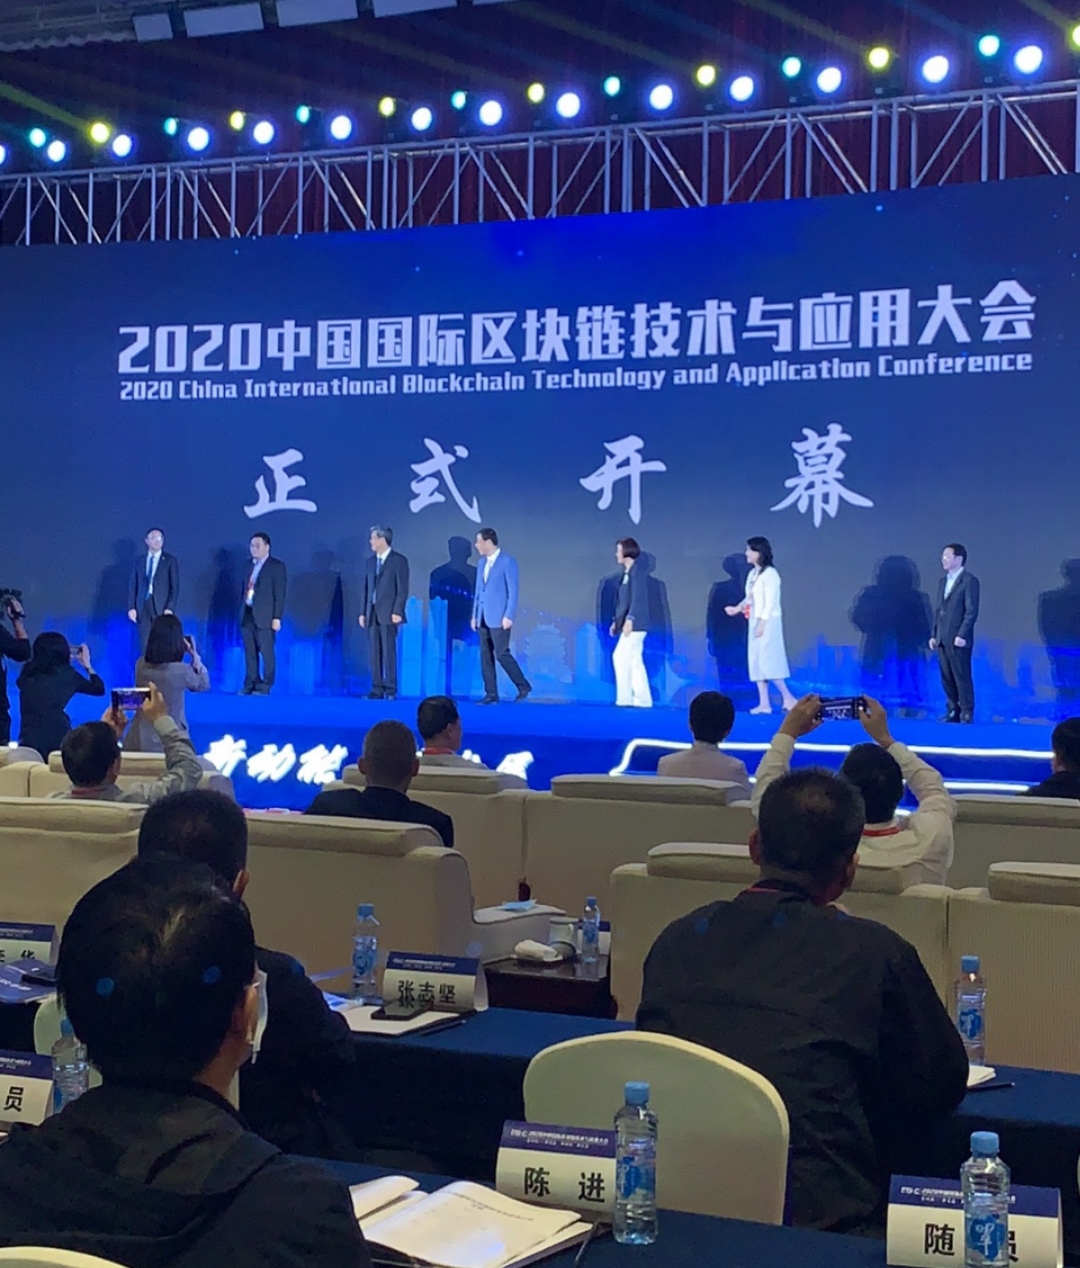 2020中国国际区块链技术与应用大会在南昌召开